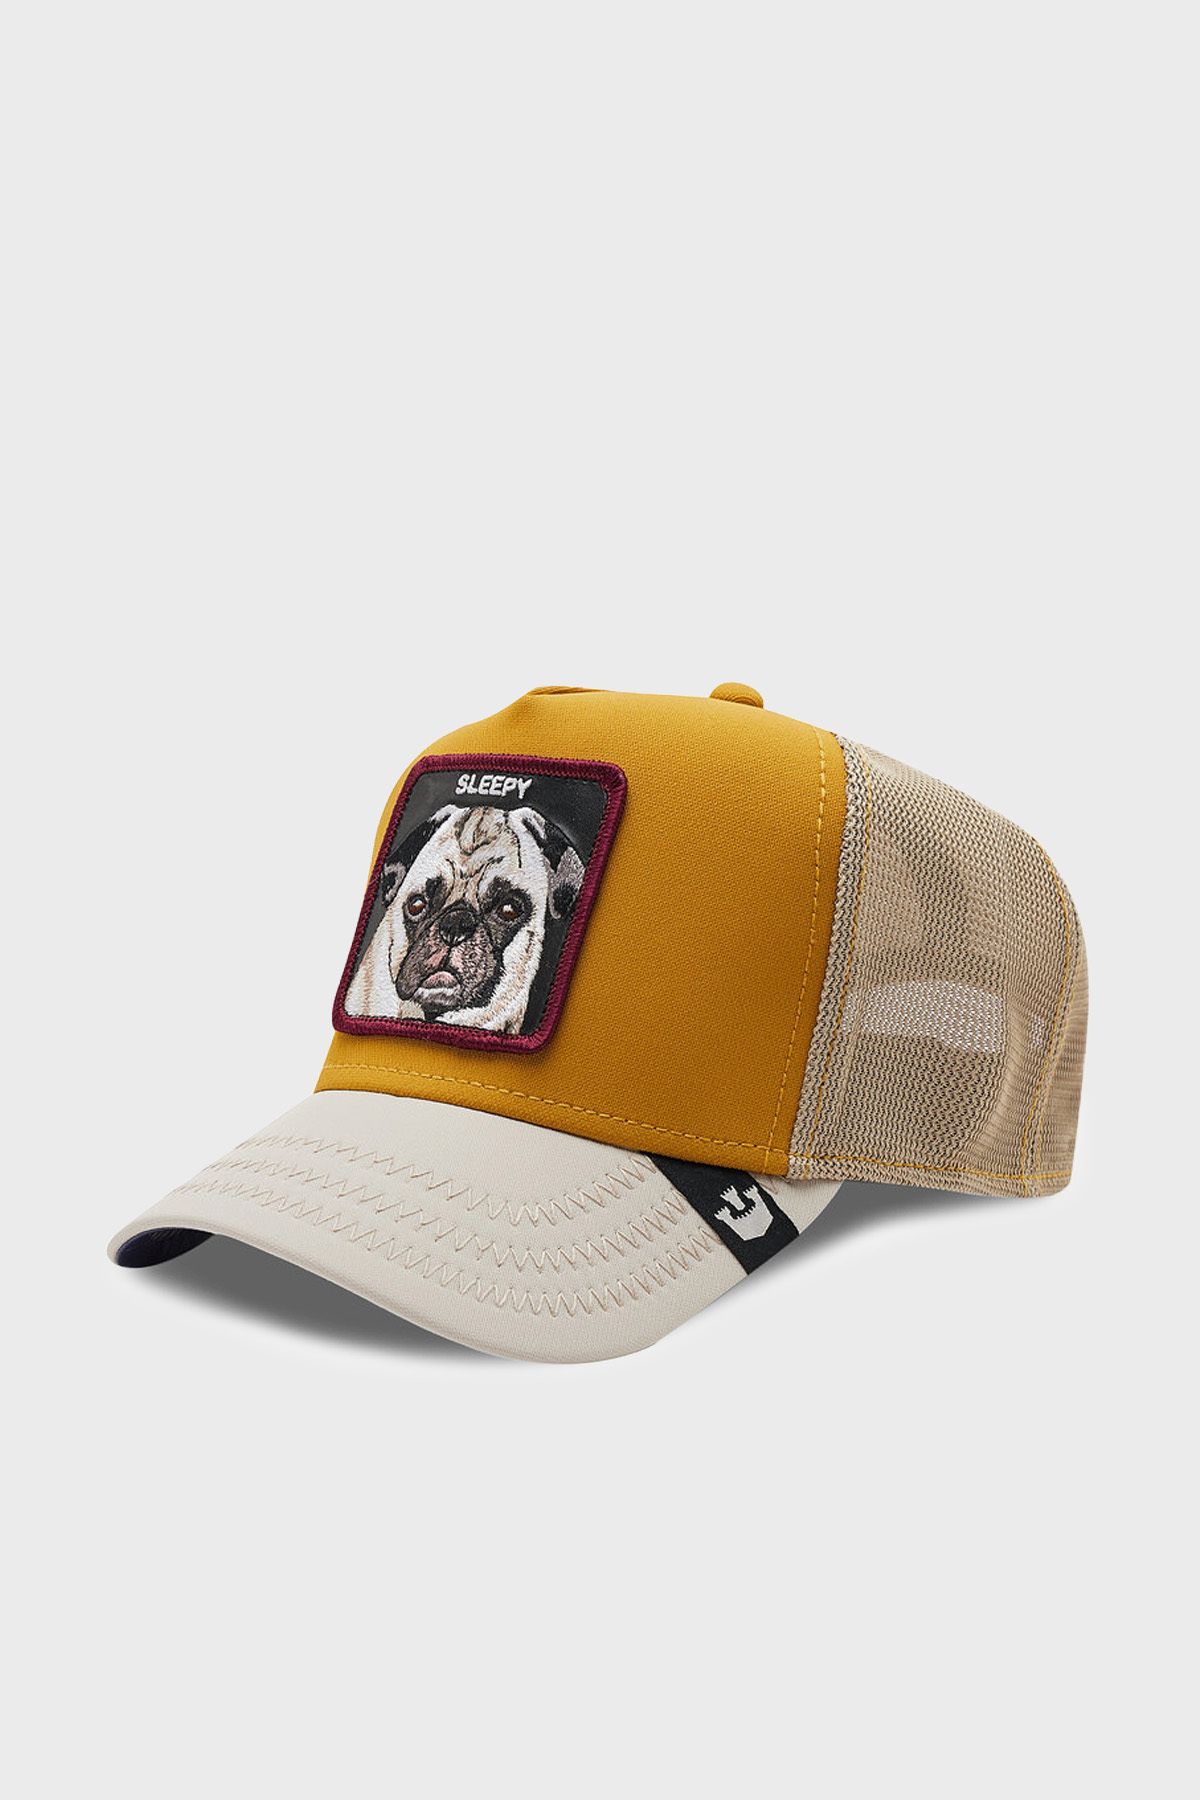 Goorin Bros 101-0404 Nap Life File Detaylı Animal Desenli Şapka Unisex Şapka 1010404